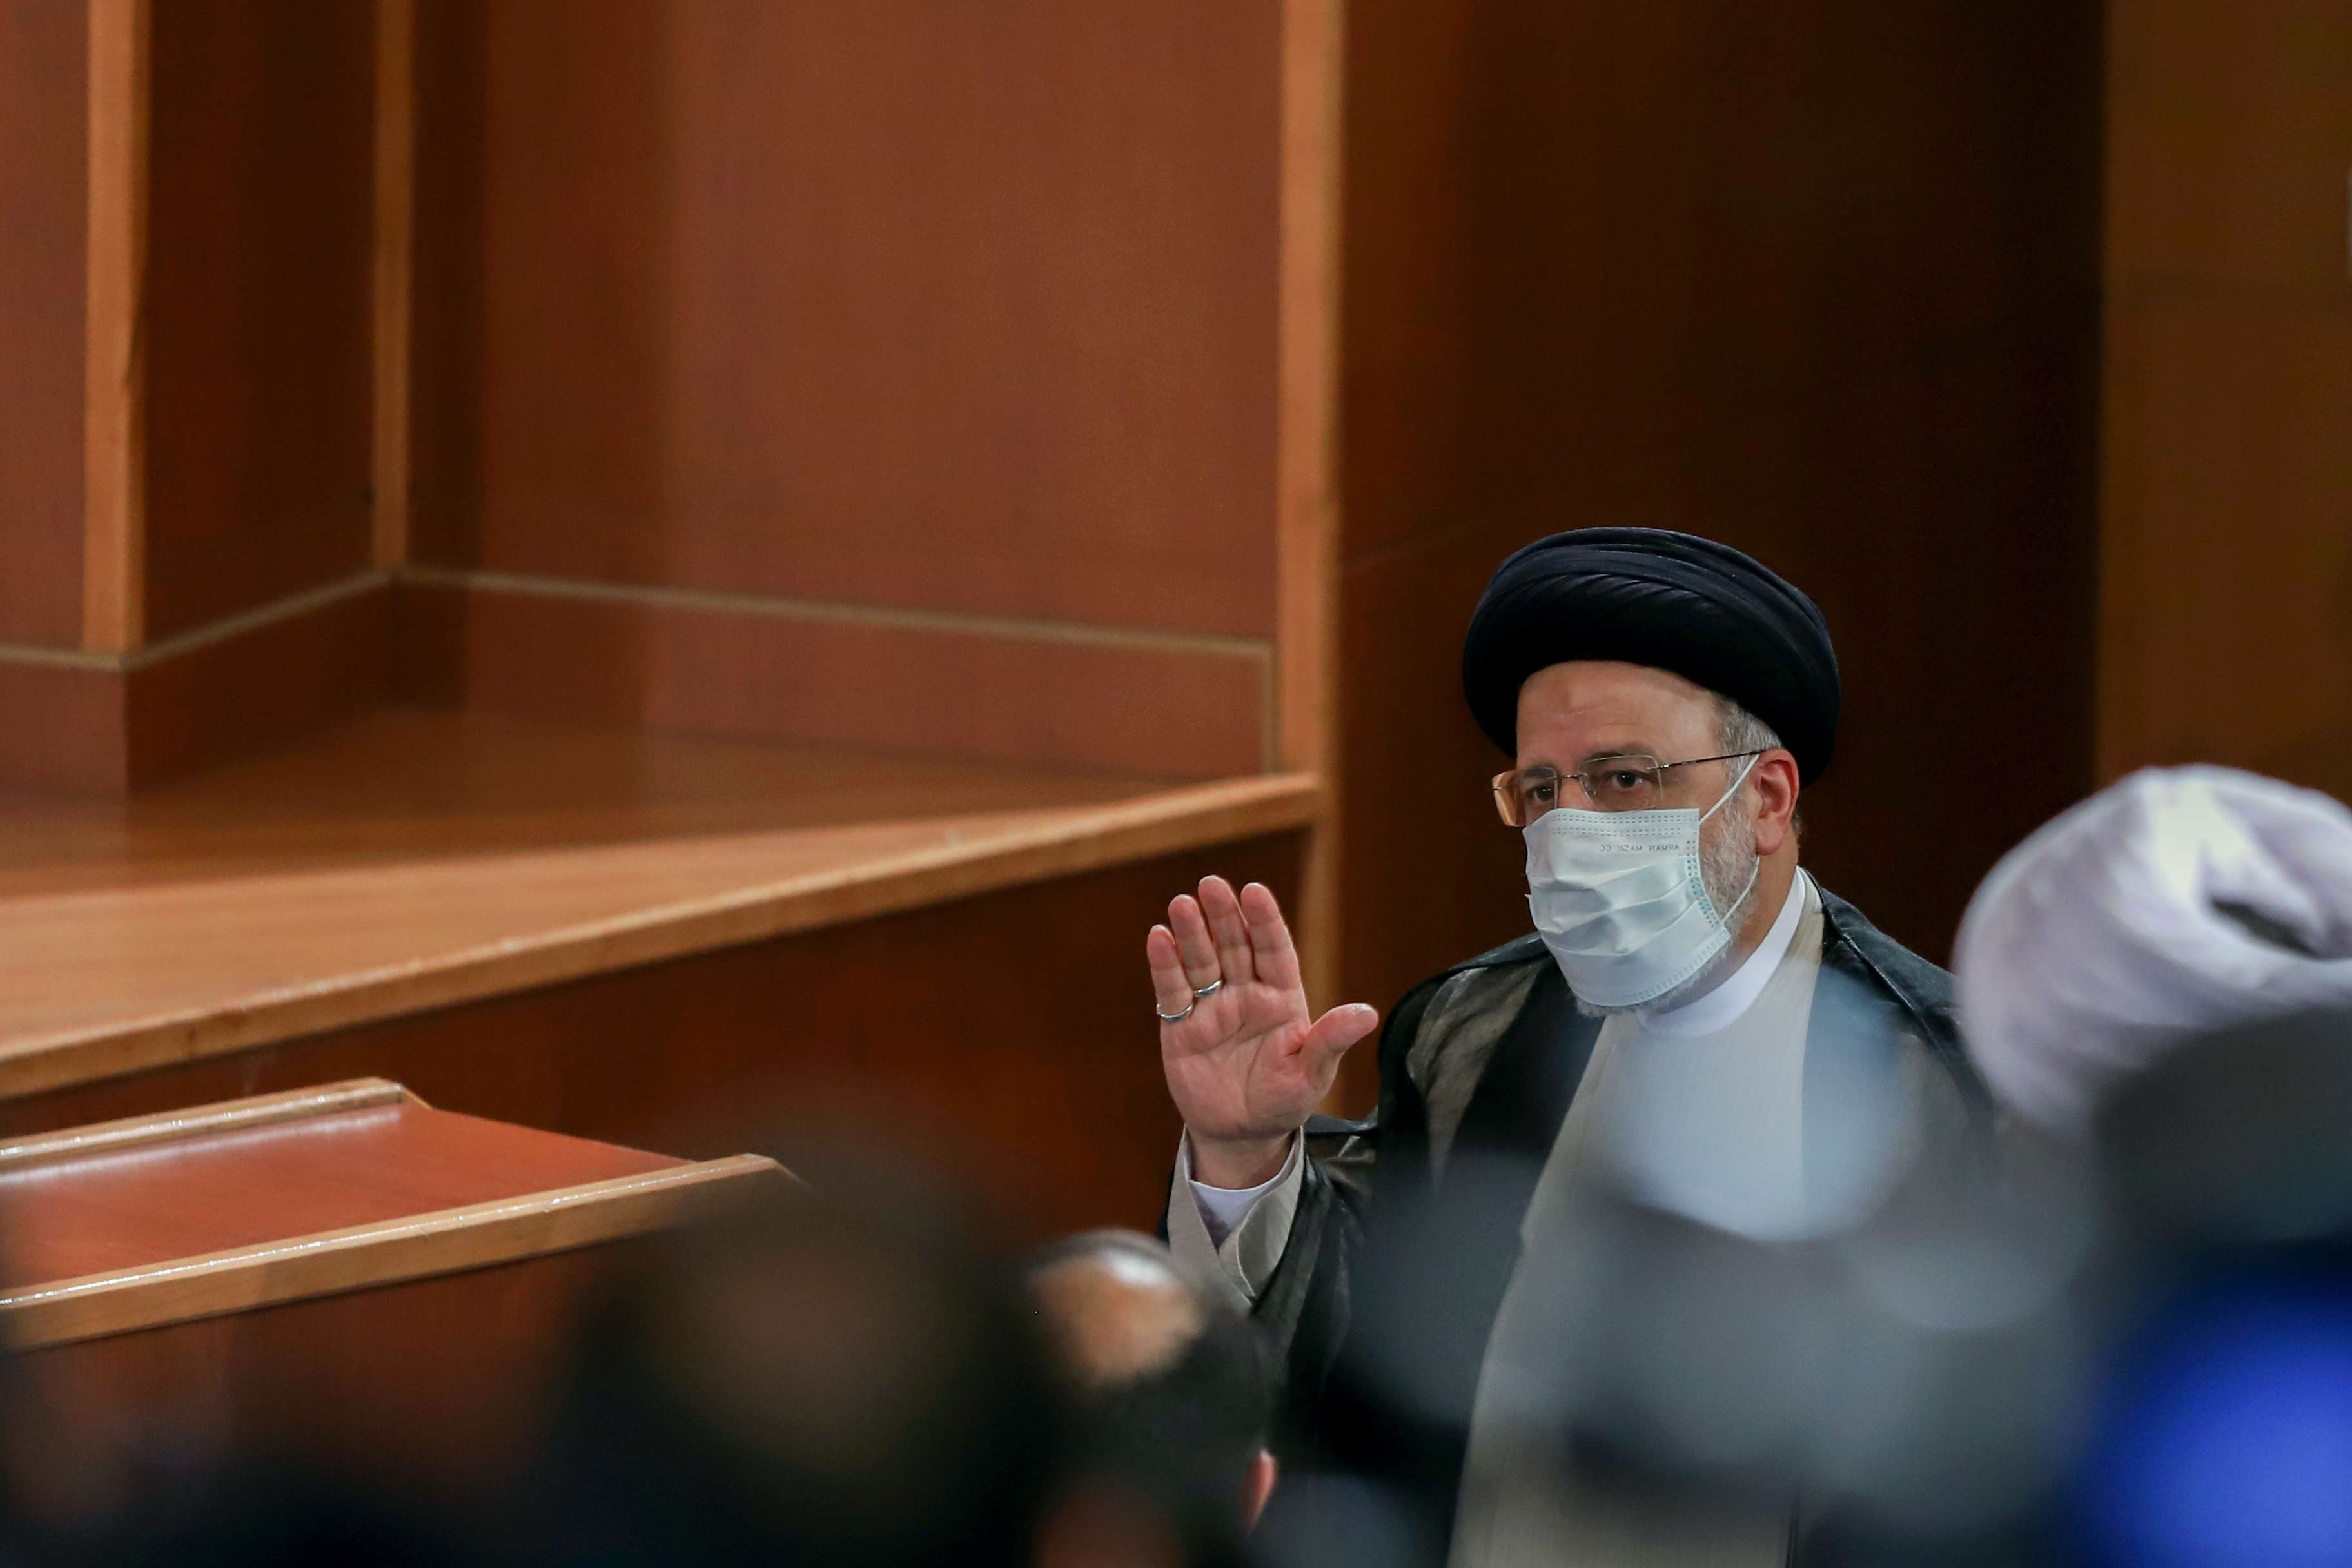 سلطة القرار في إيران بيد خامنئي لا رئيسي